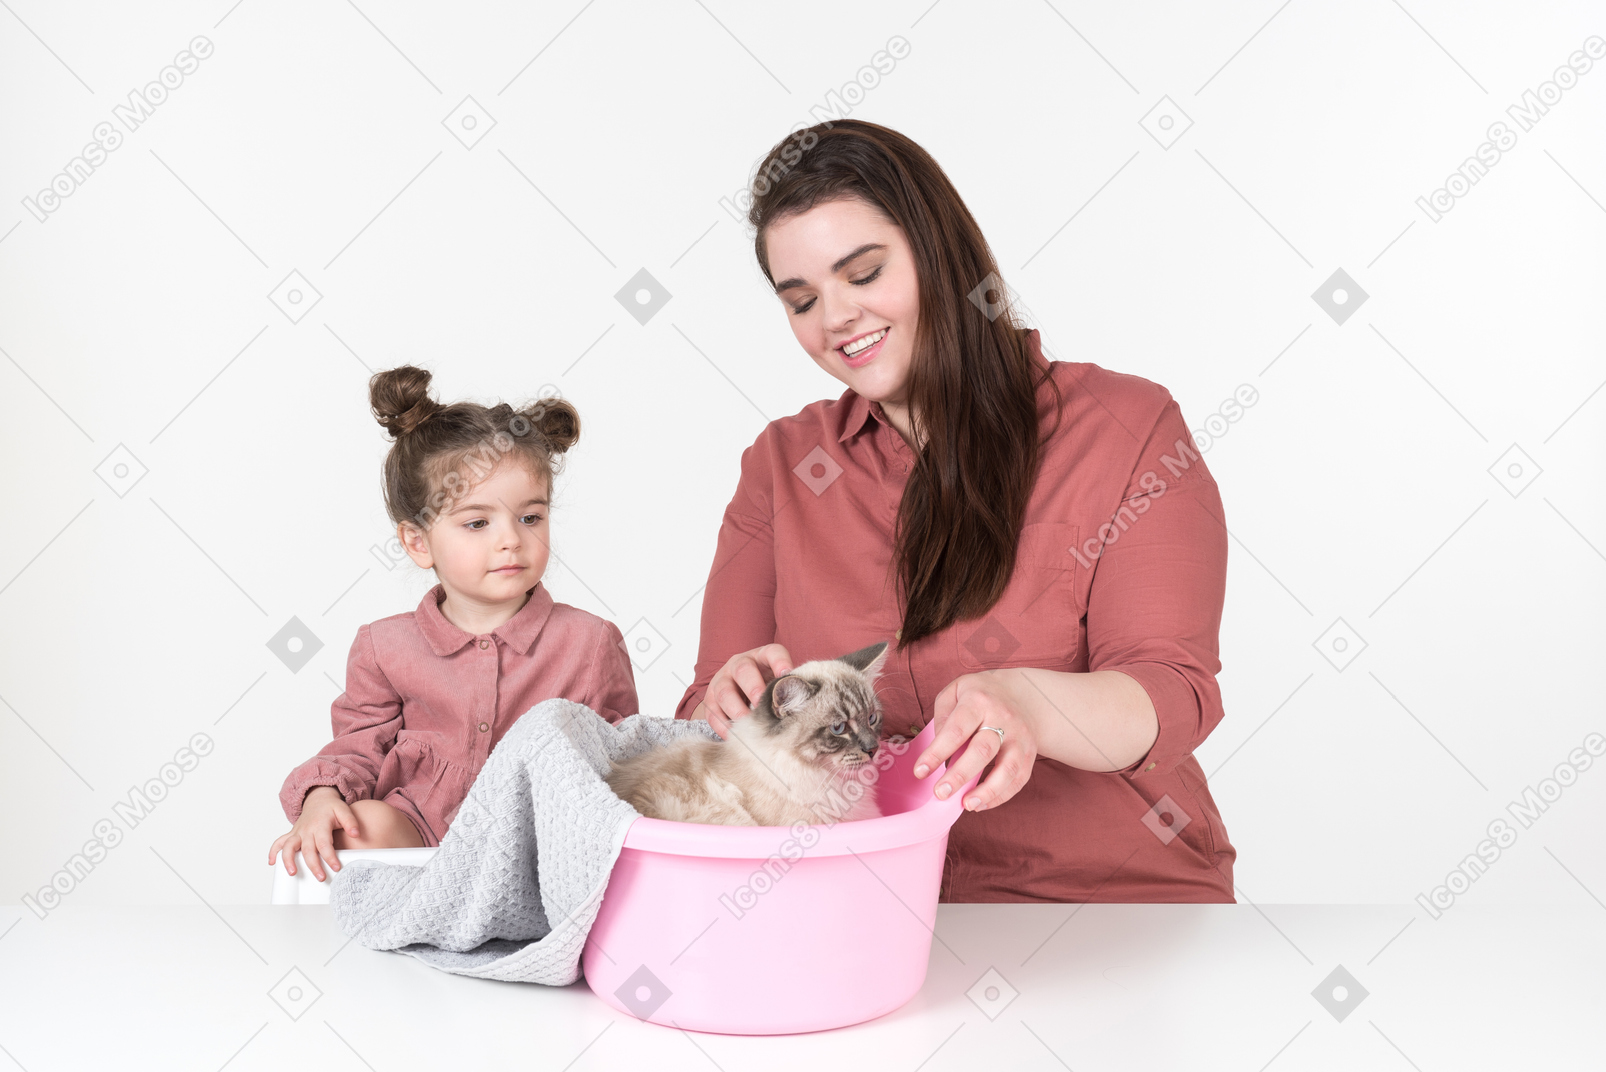 Mutter und ihre kleine tochter, rot und rosa gekleidet, sitzen mit ihrer familienkatze am esstisch